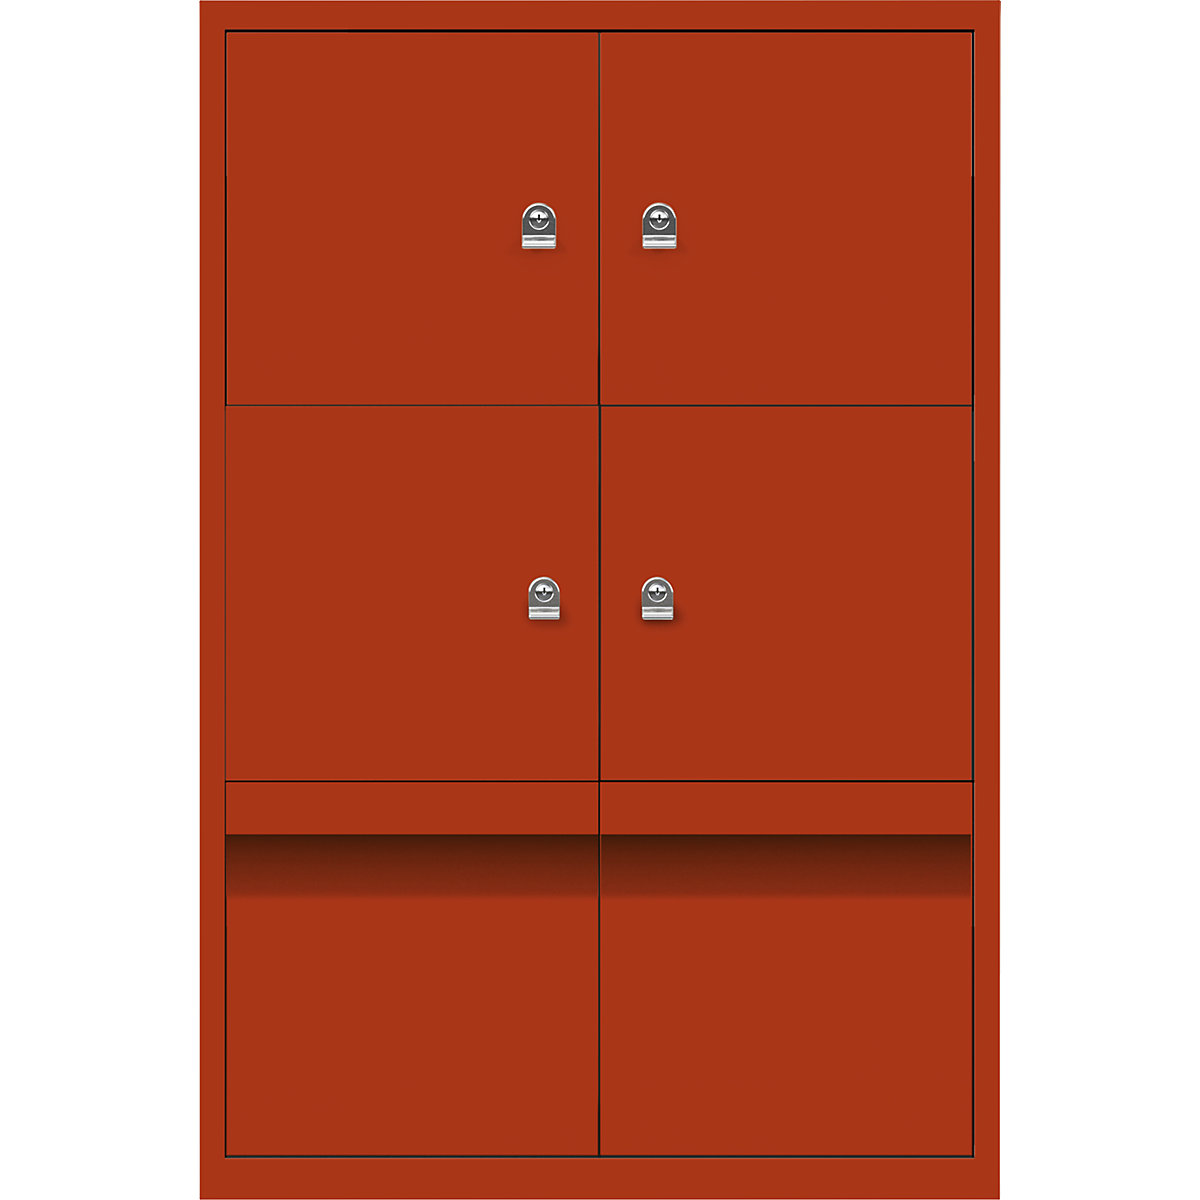 Armoire à casiers LateralFile™ – BISLEY, 4 casiers et 2 tiroirs hauteur 375 mm, séville-10